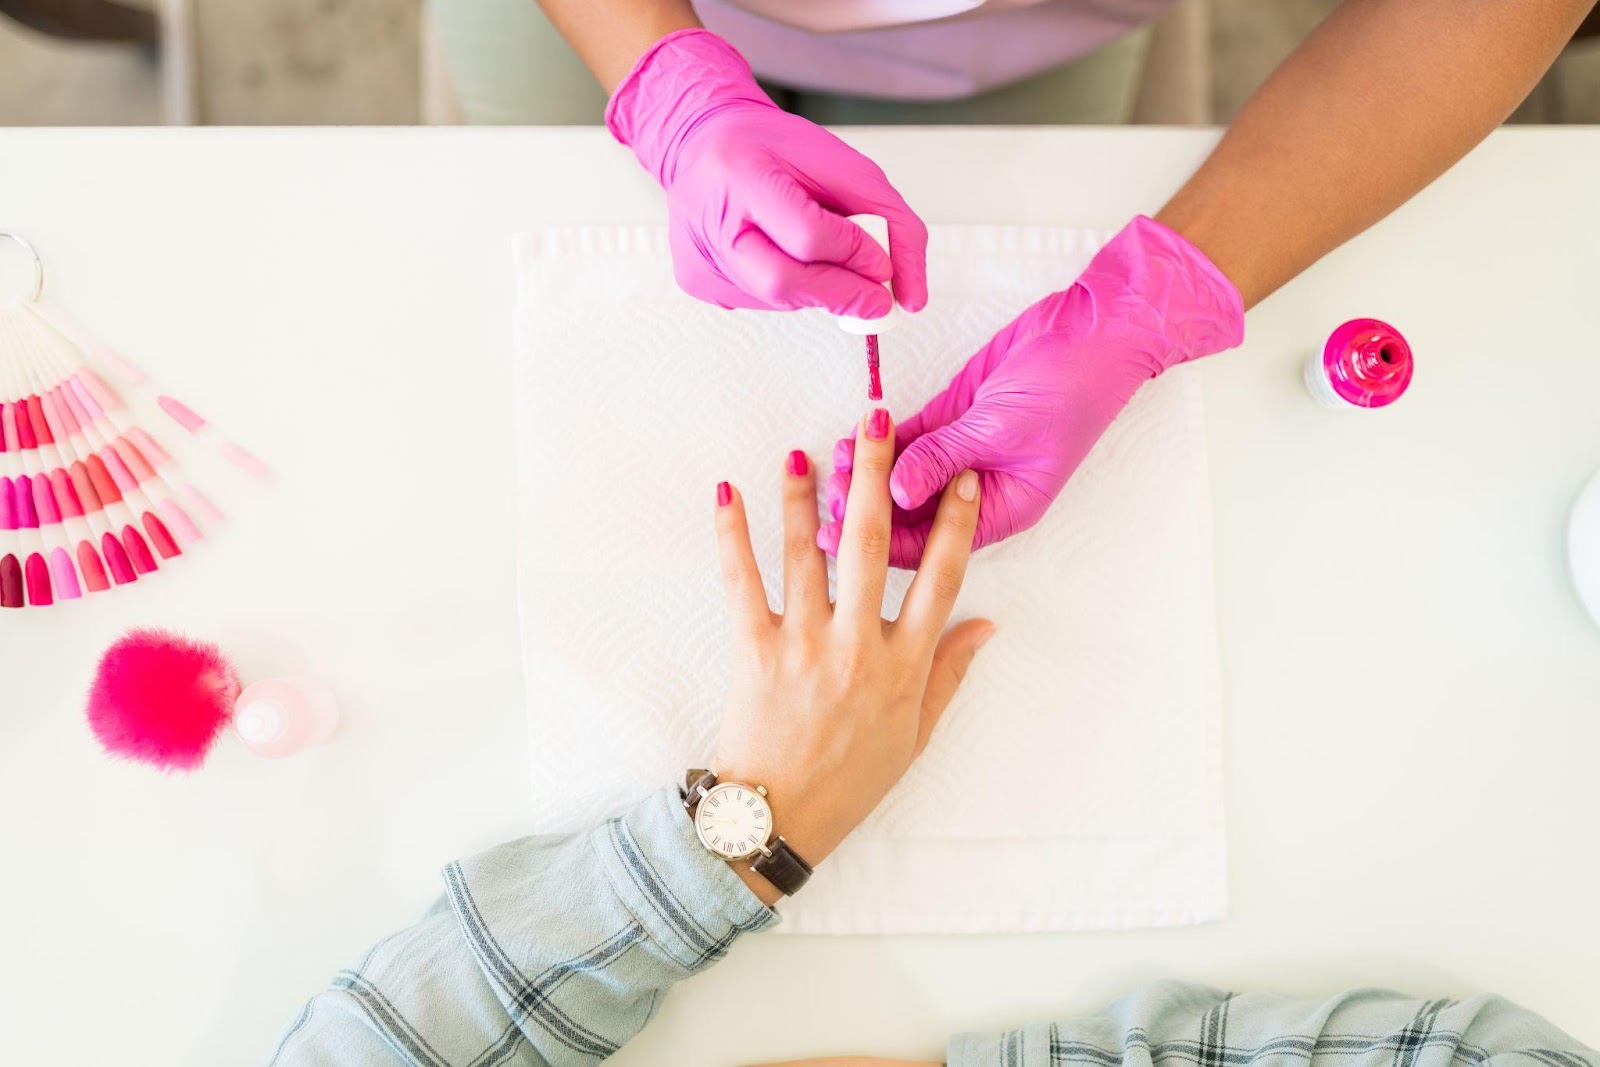 Die globale Nagelpflegebranche erwirtschaftet jährlich mehr als 10 Milliarden US-Dollar.